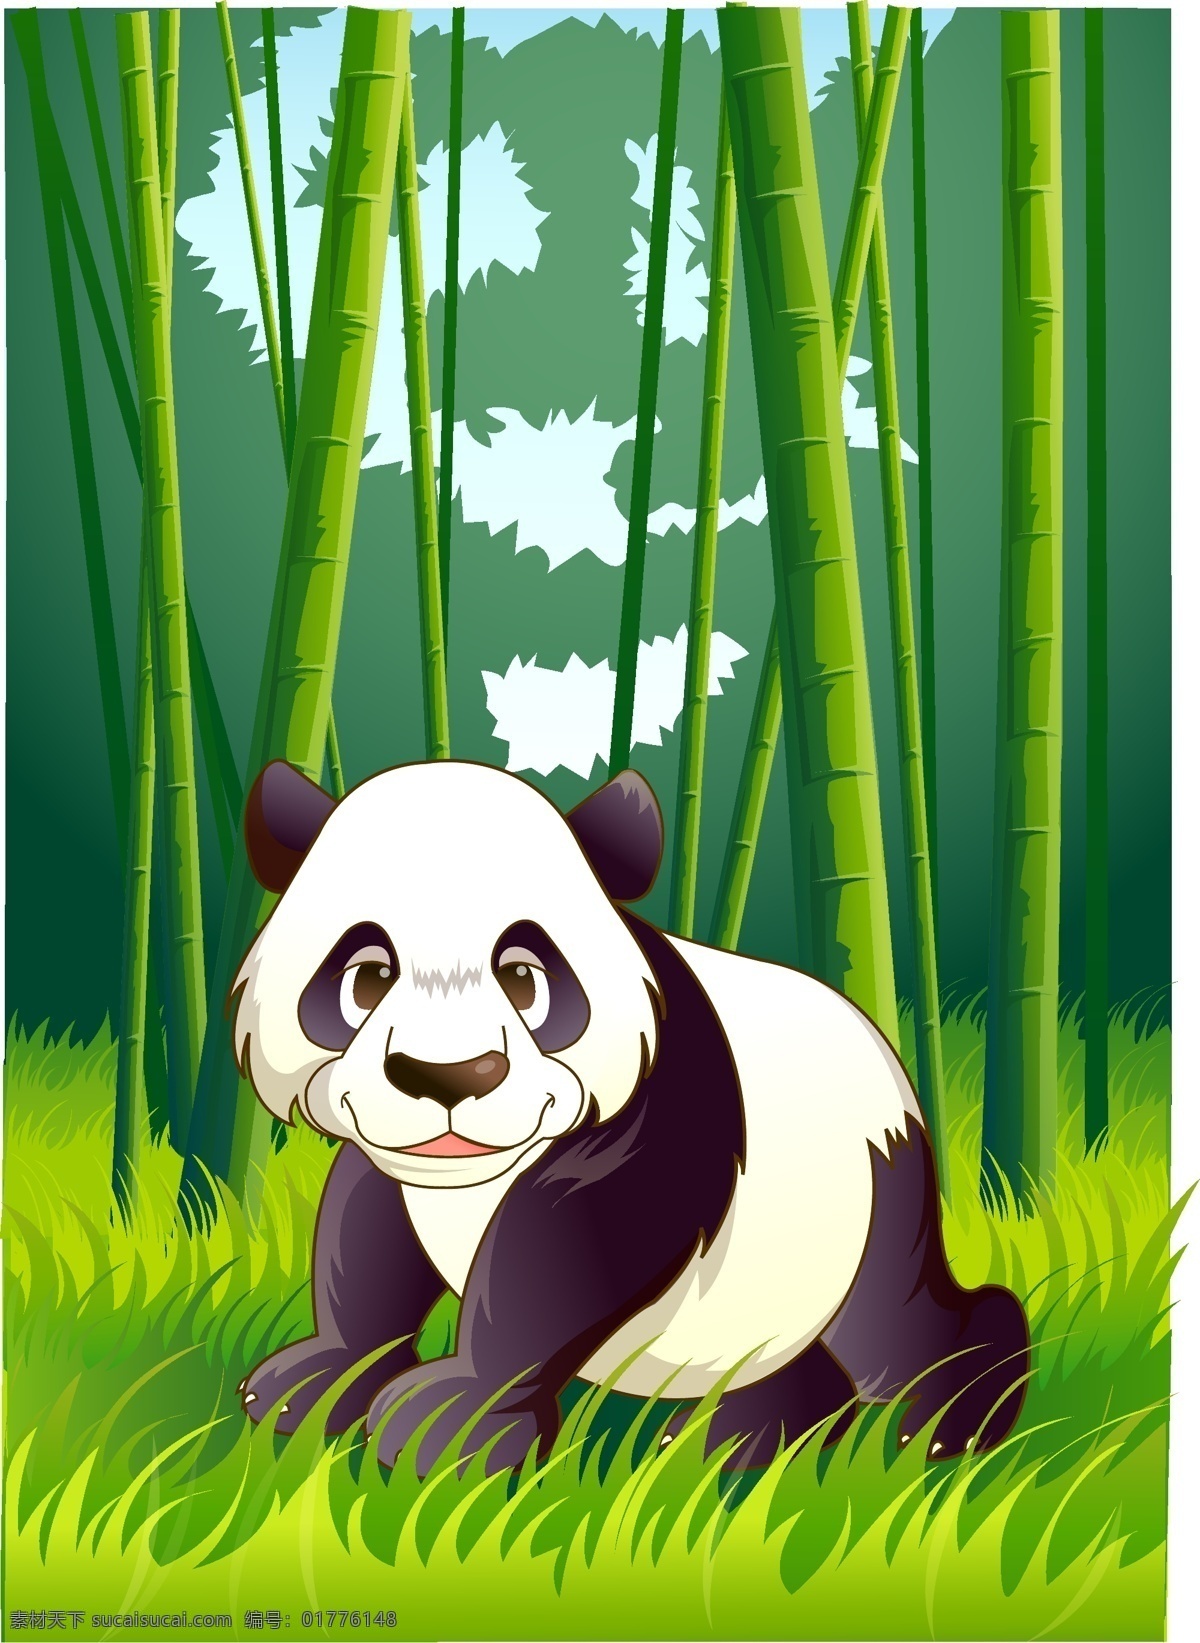 动物 动物模板下载 动物矢量素材 其他设计 森林 森林背景 生物世界 野生动物 可爱 绿色 熊猫 矢量 模板下载 野兽 自然 自然背景 psd源文件